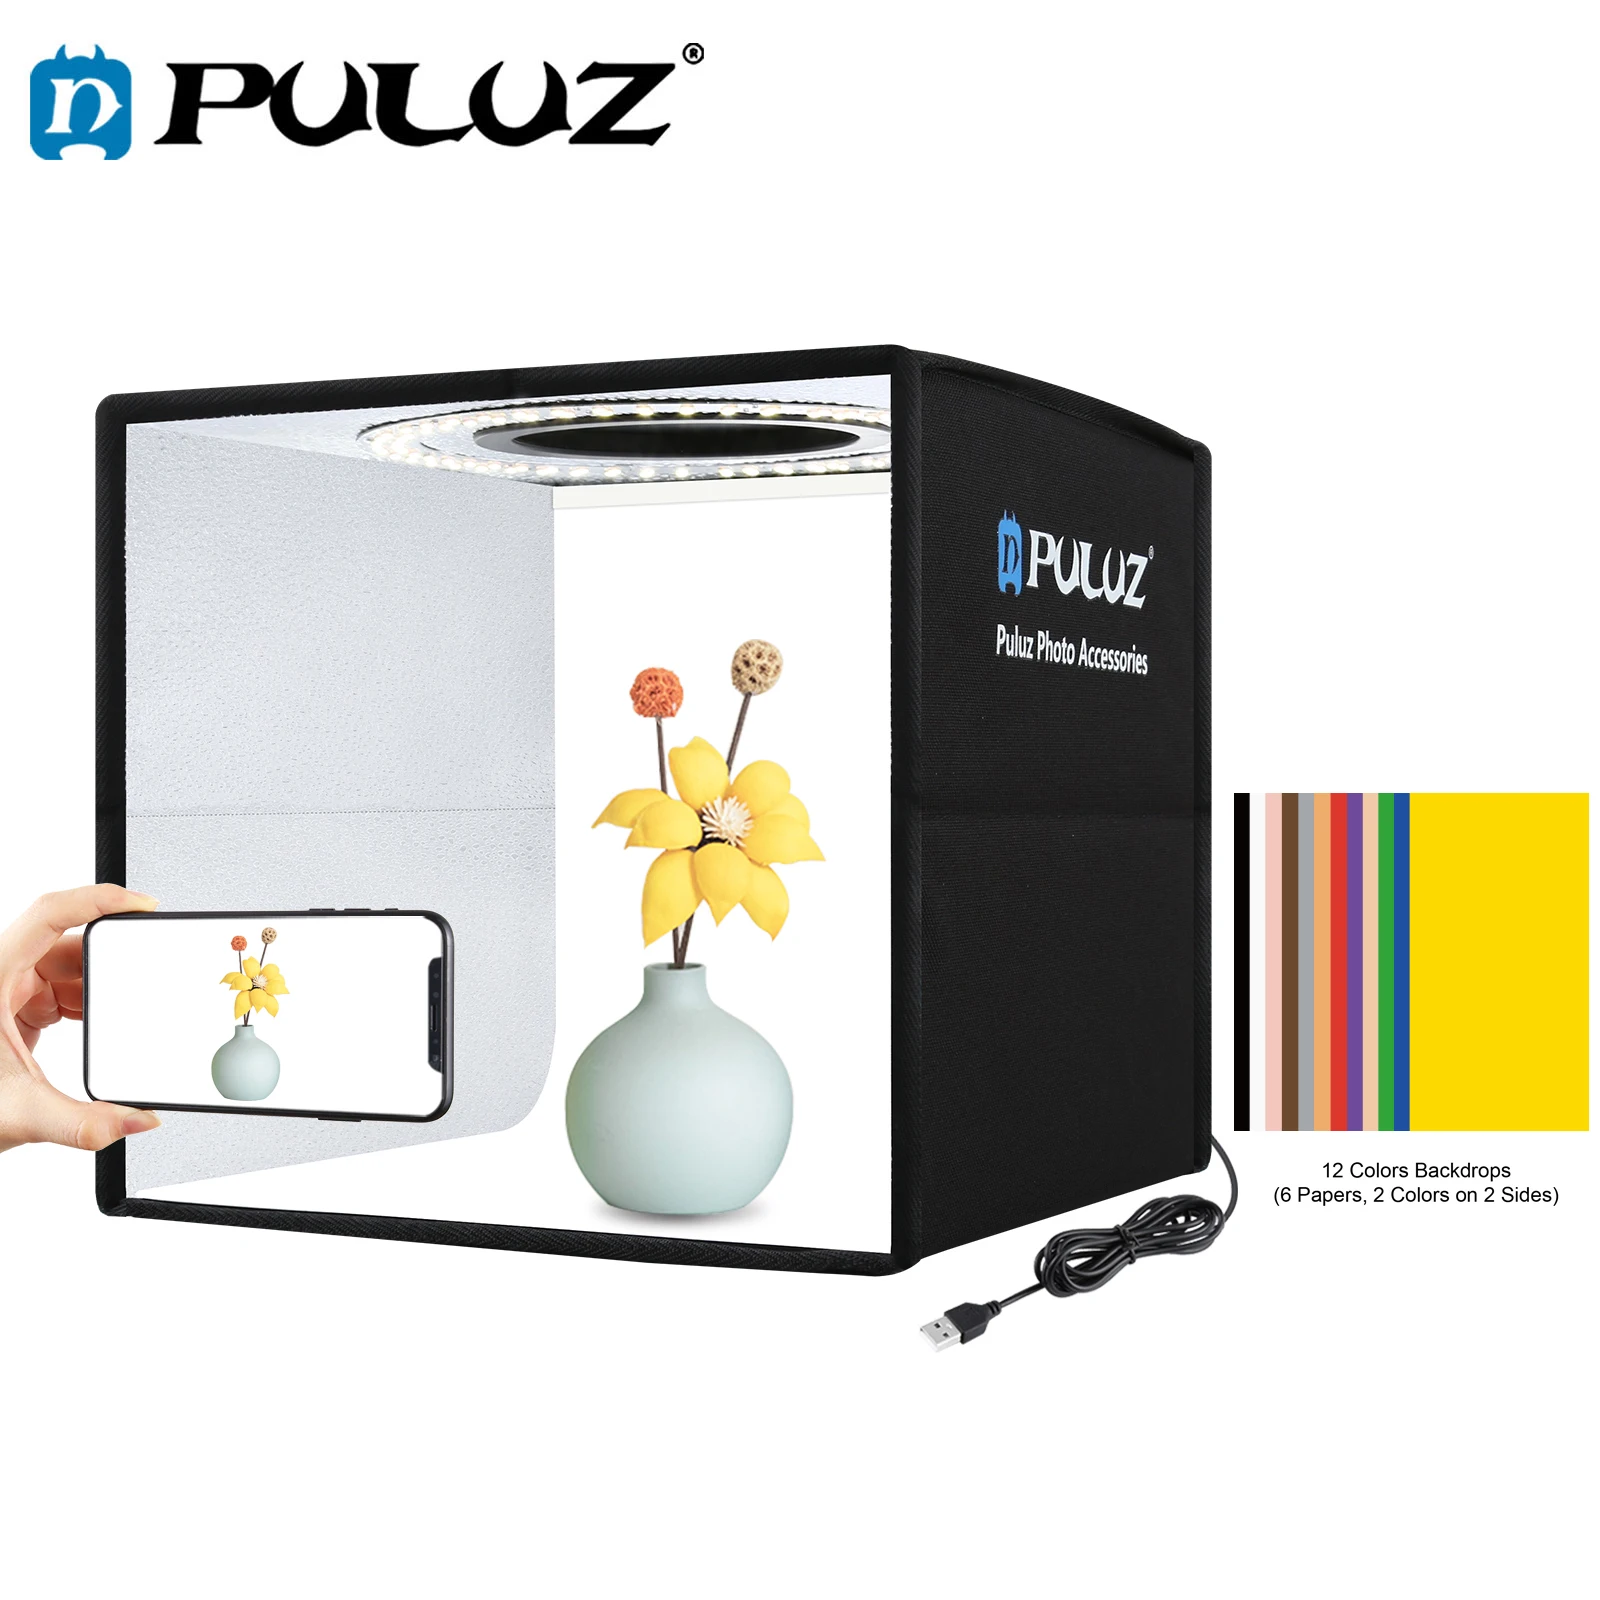 

Складная студийная коробка PULUZ 25x25 см, палатка для съемки с регулируемой яркостью, круглый светодиодный светильник, жизнь, фотография еды, фотобокс с 12 цветными фонами